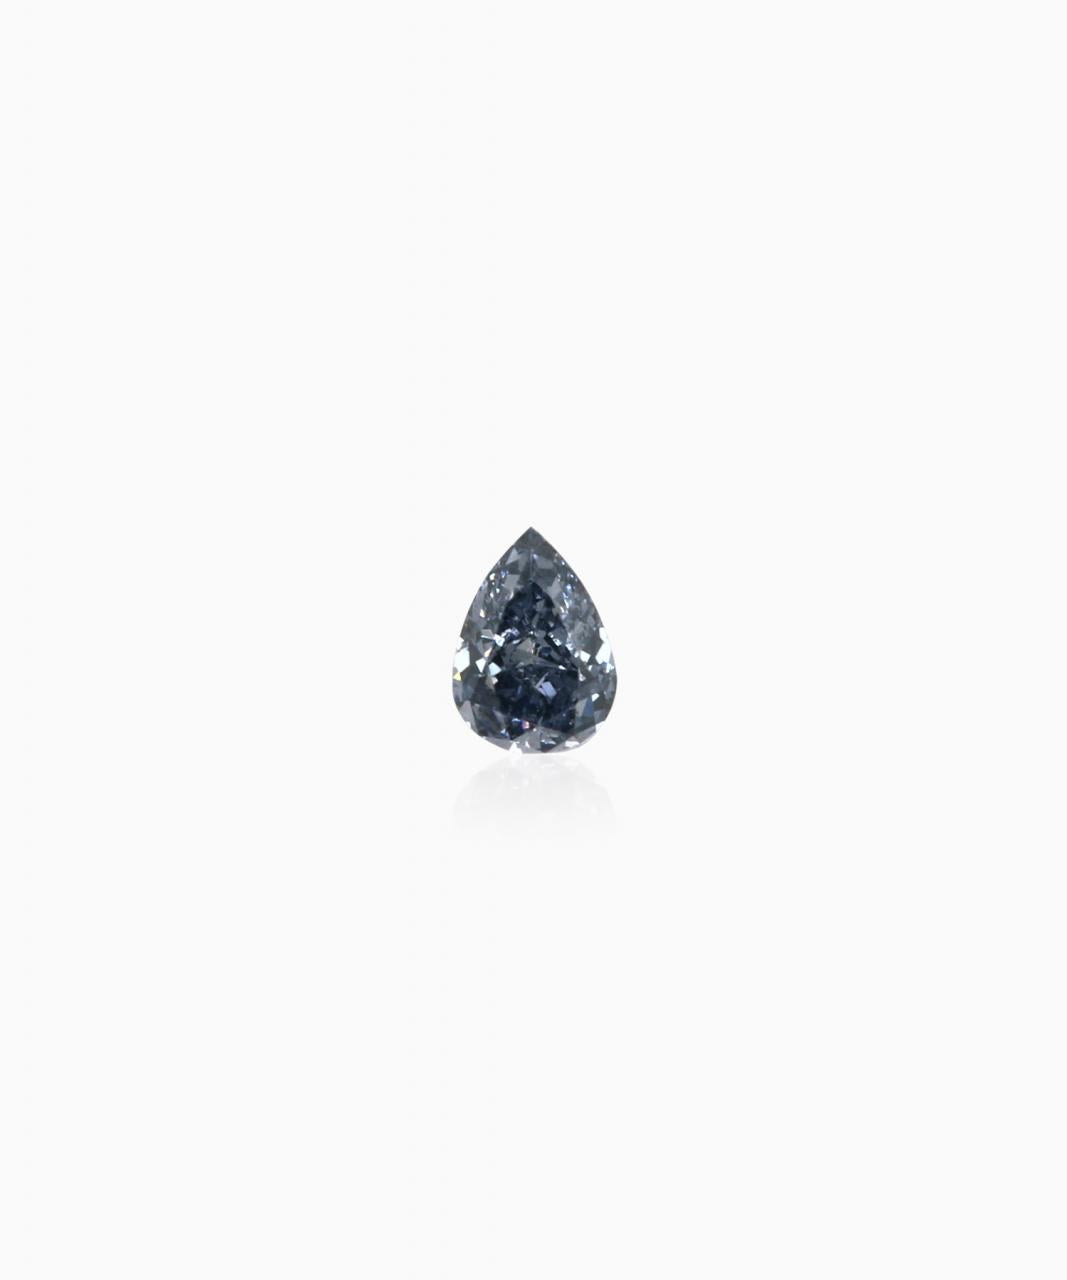 0.04ct Natural Fancy Deep Grey Blue, BL3, VS2, Argyle Blue Diamond